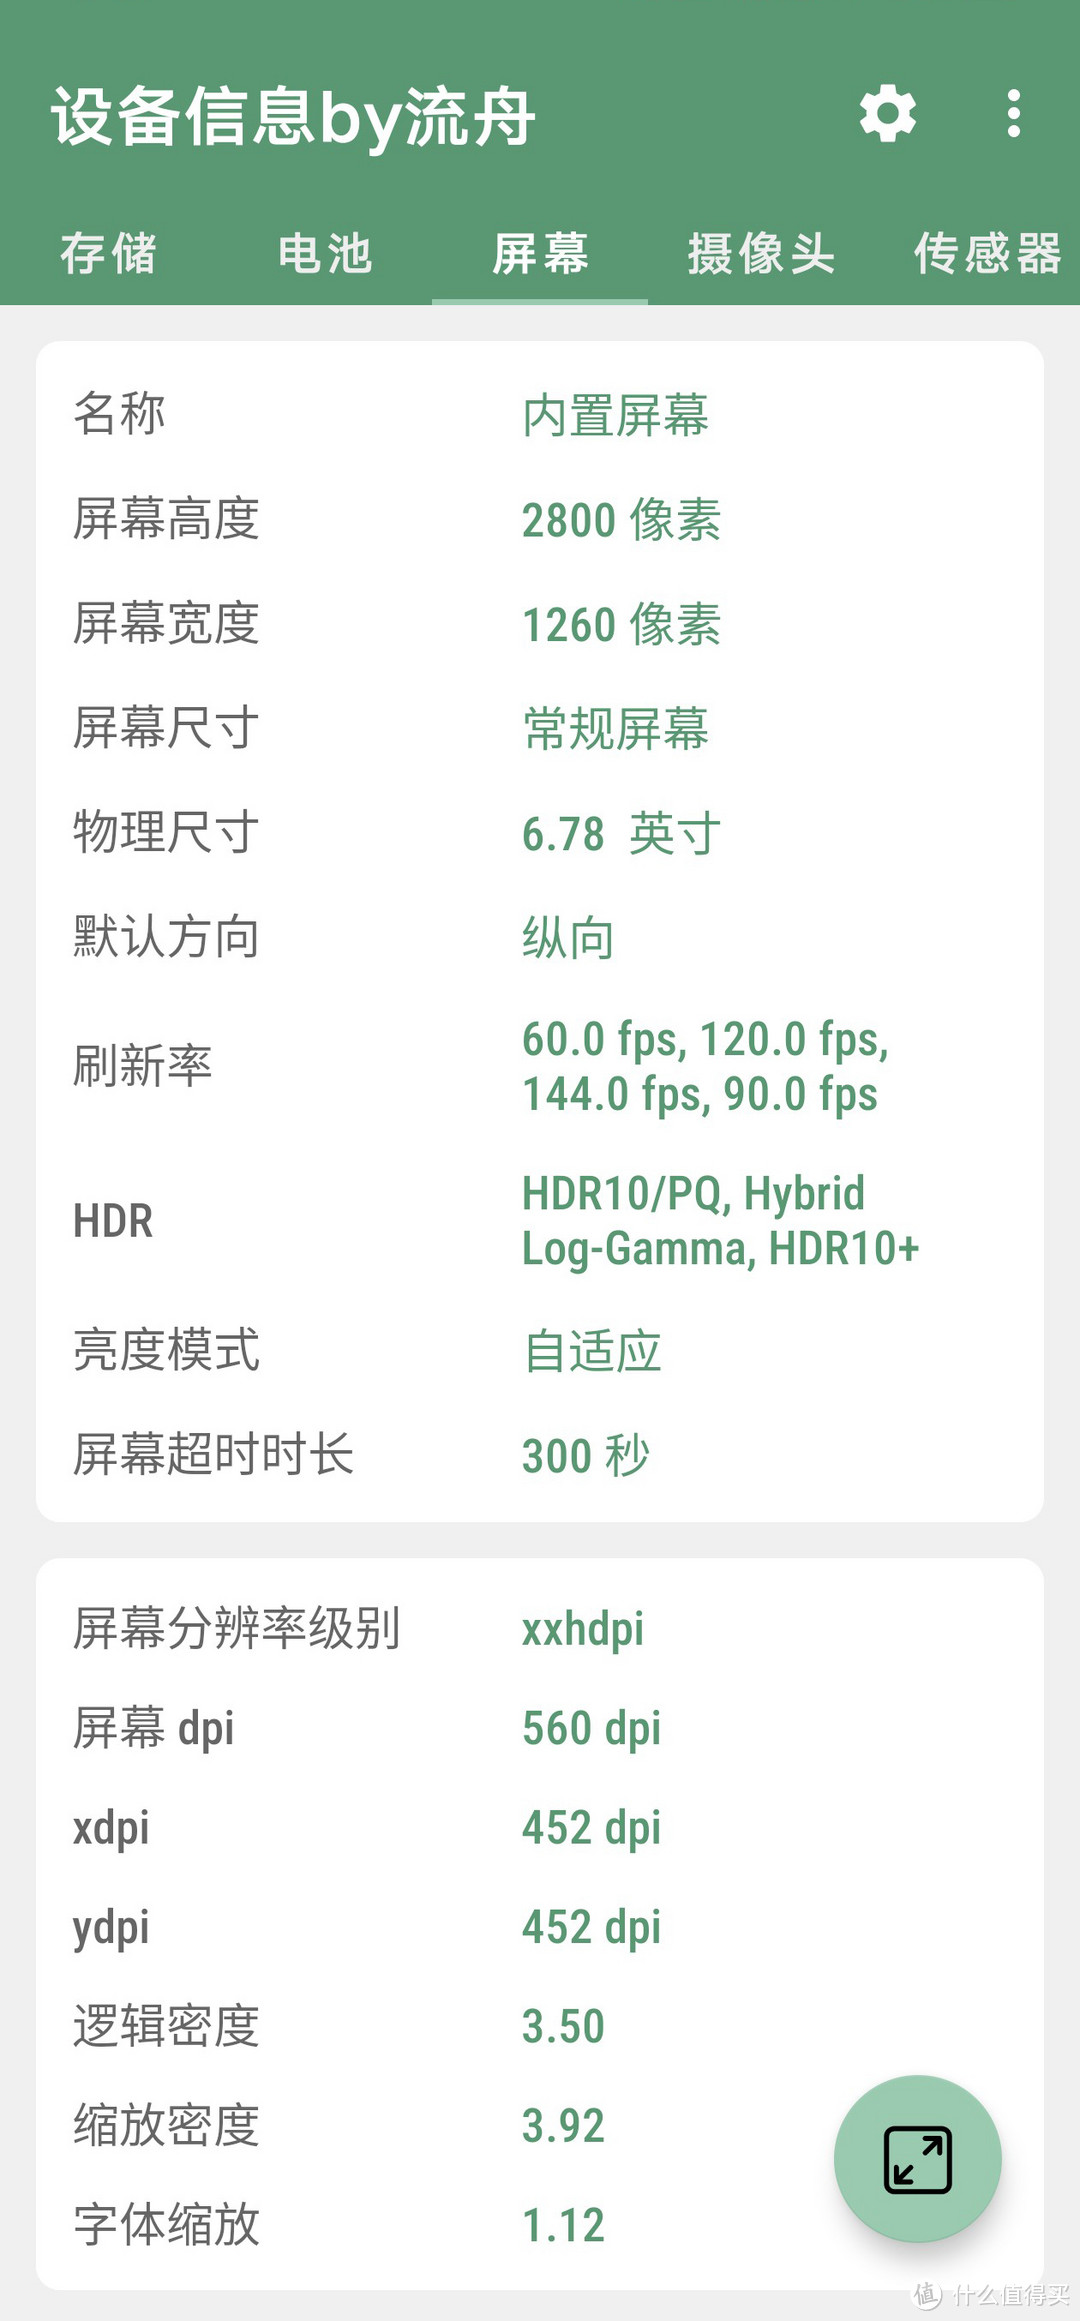 时隔近四年拿金币兑换京东E卡后再度出手，“0元购”拿下iQOO Neo 8 Pro 16GB+1TB“皇帝版”使用体验分享